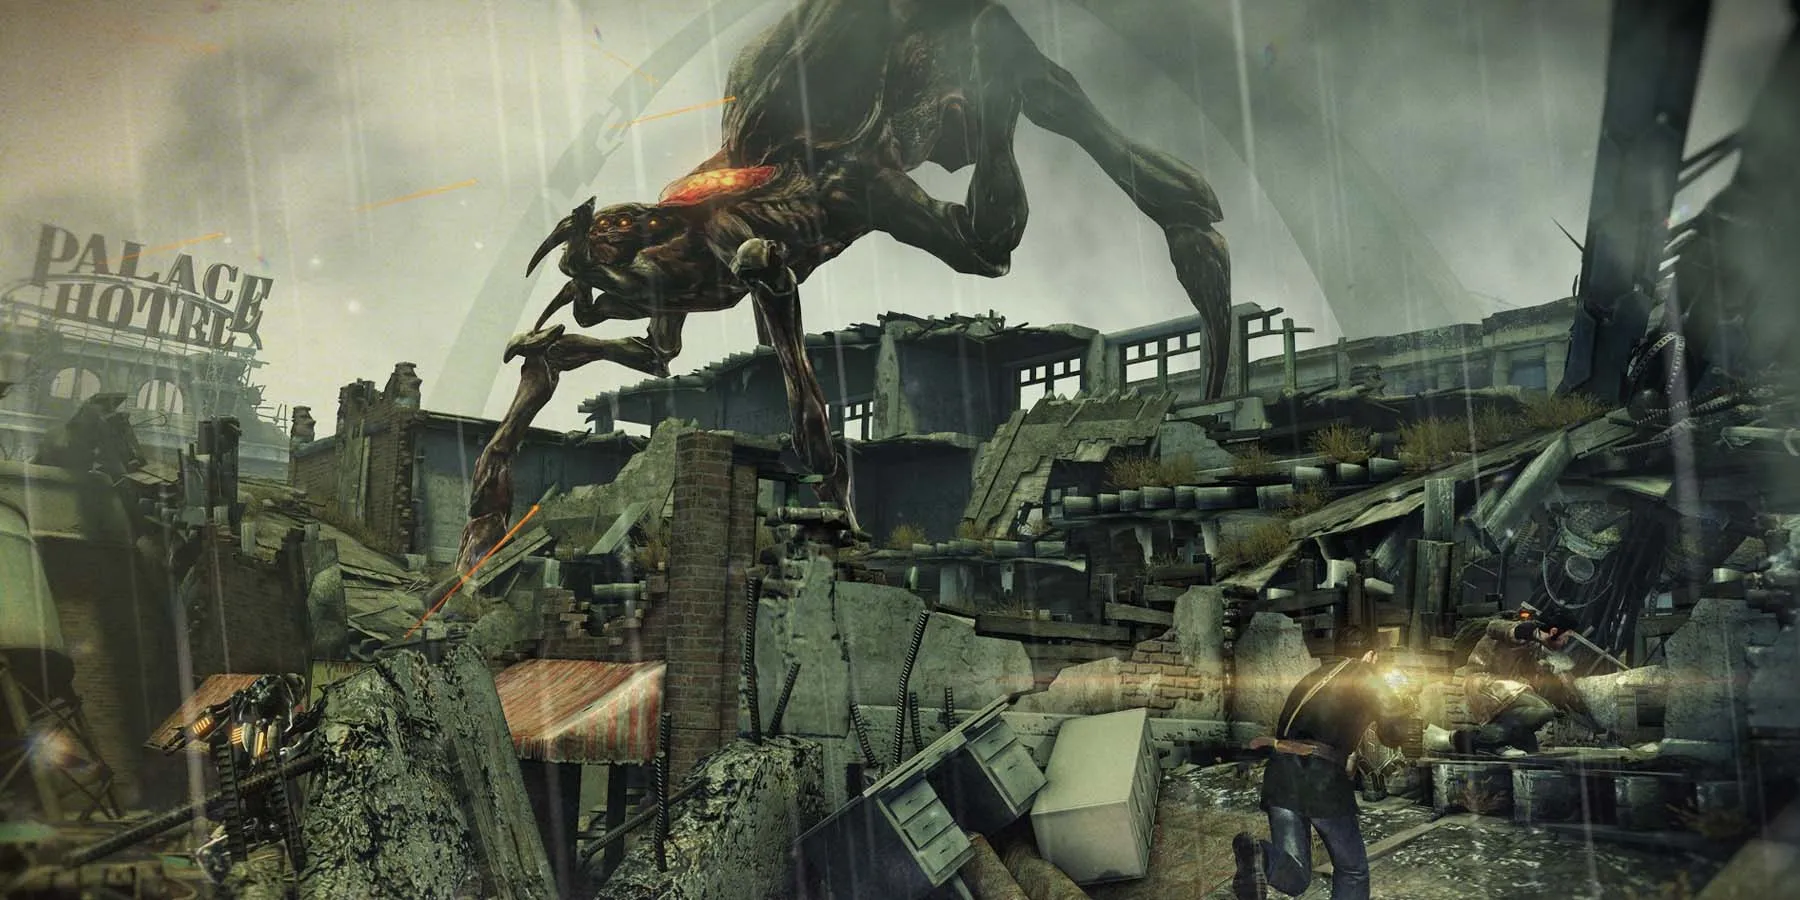 Un grande creatura aliena si aggira in una città distrutta sotto la pioggia